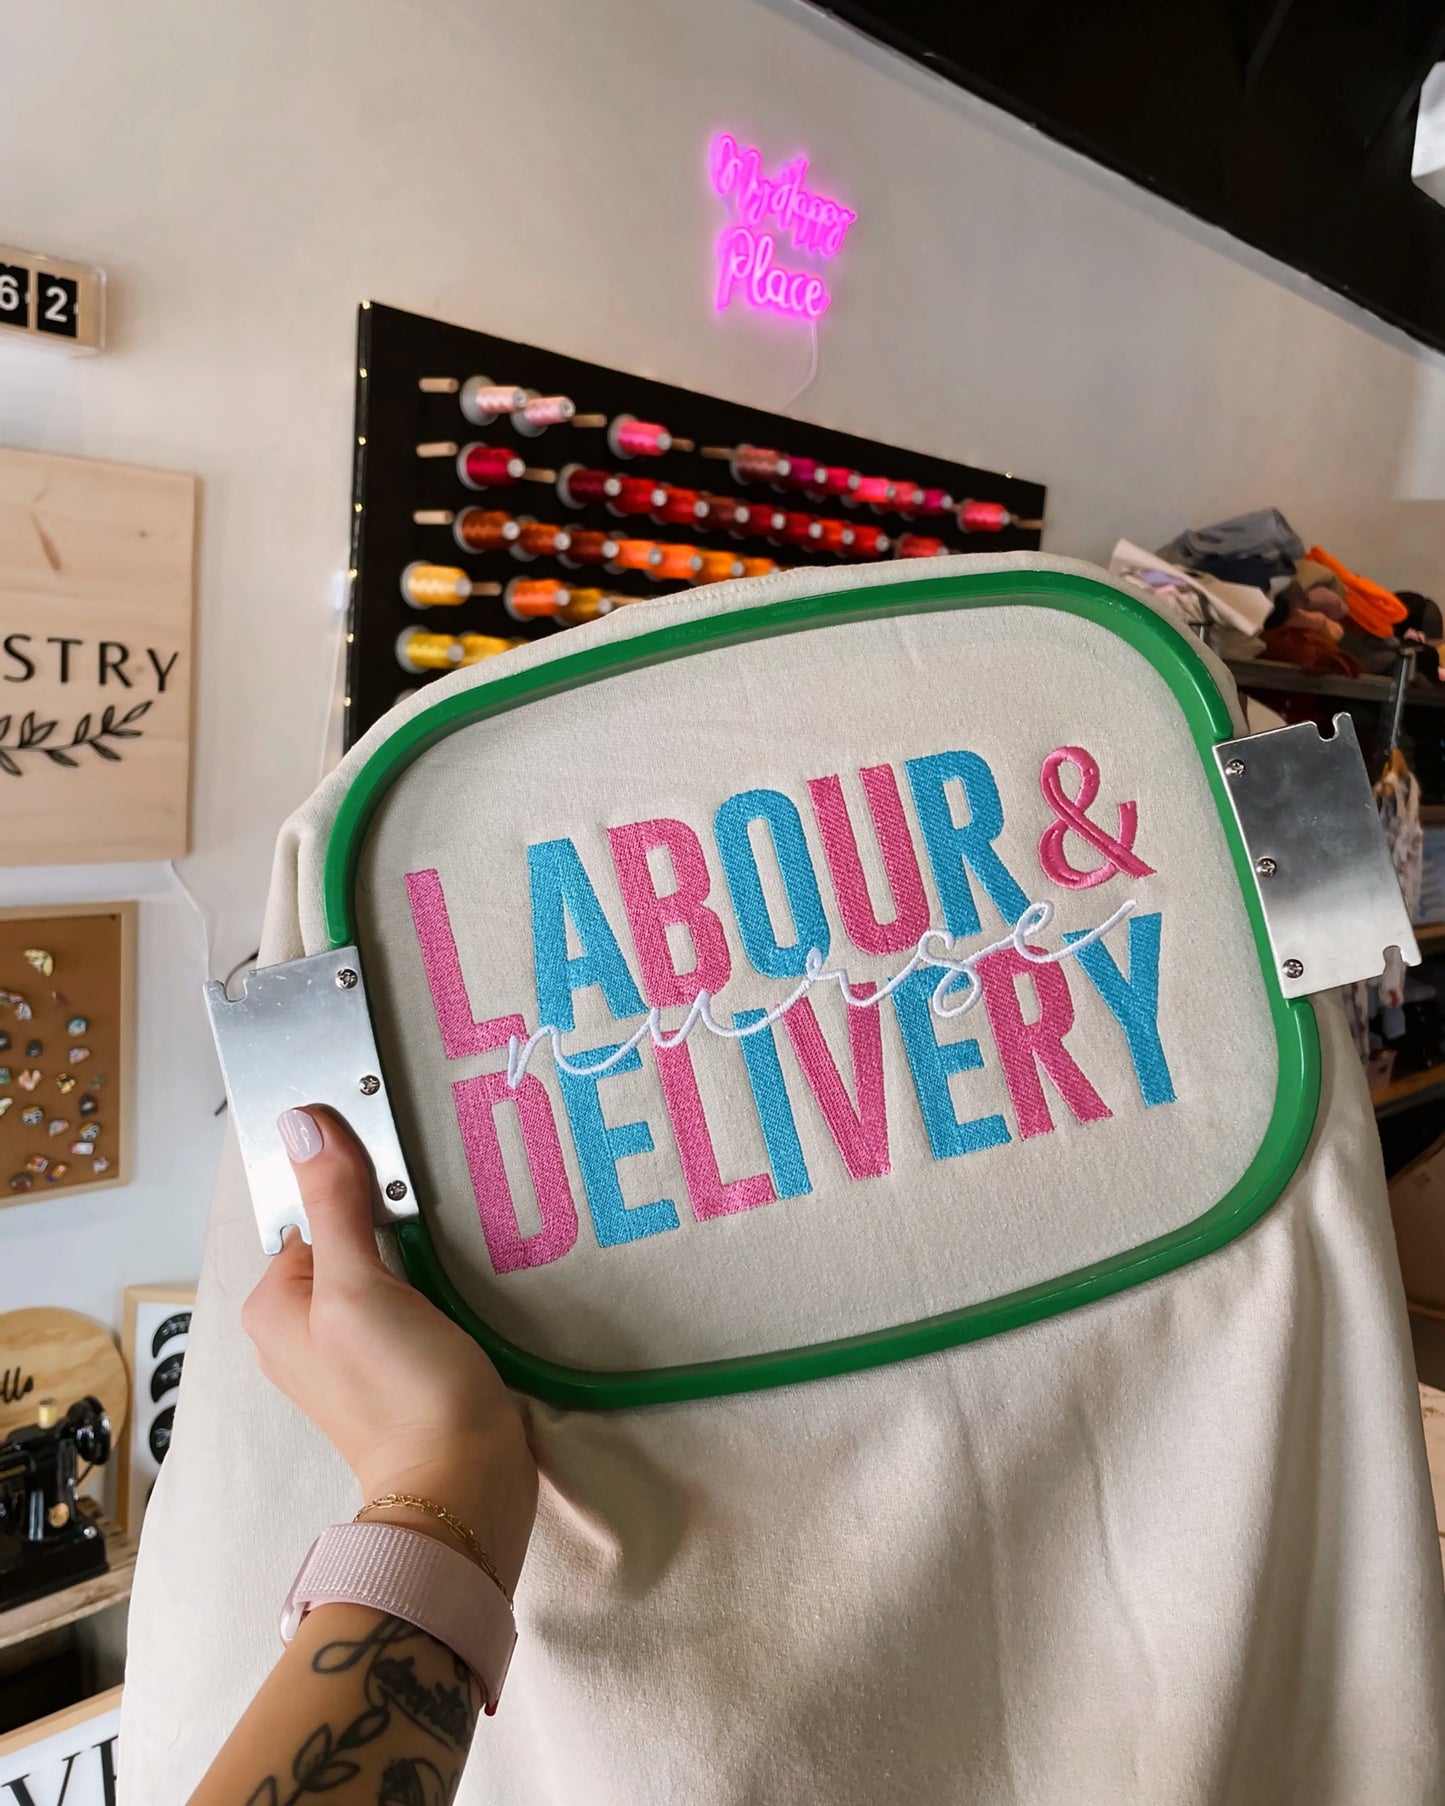 Labour & Delivery Nurse